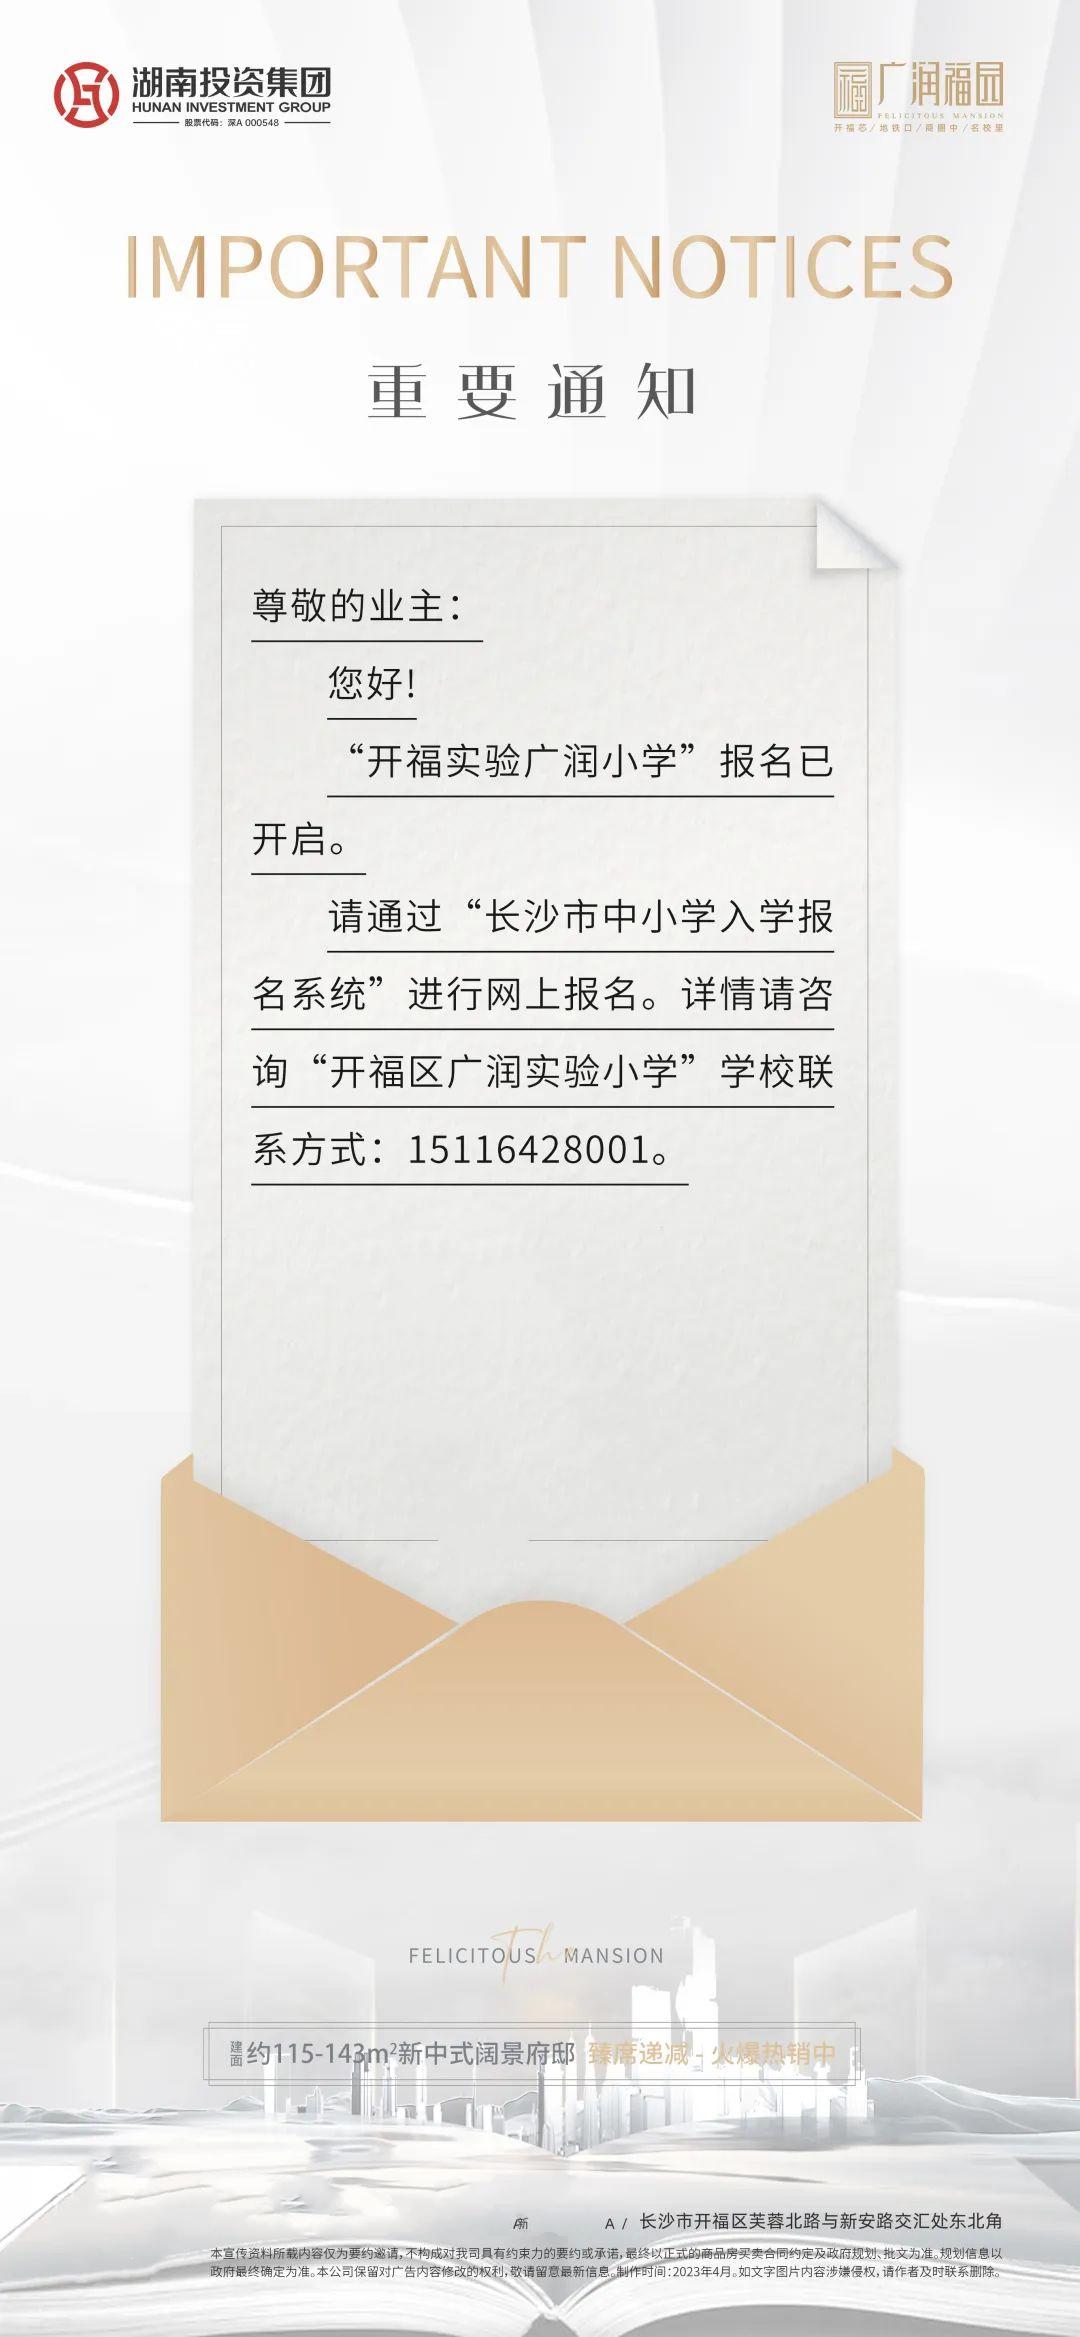 【报名季】开福实验广润小学开始报名了，广润福园建面115-191㎡9字头热销中！